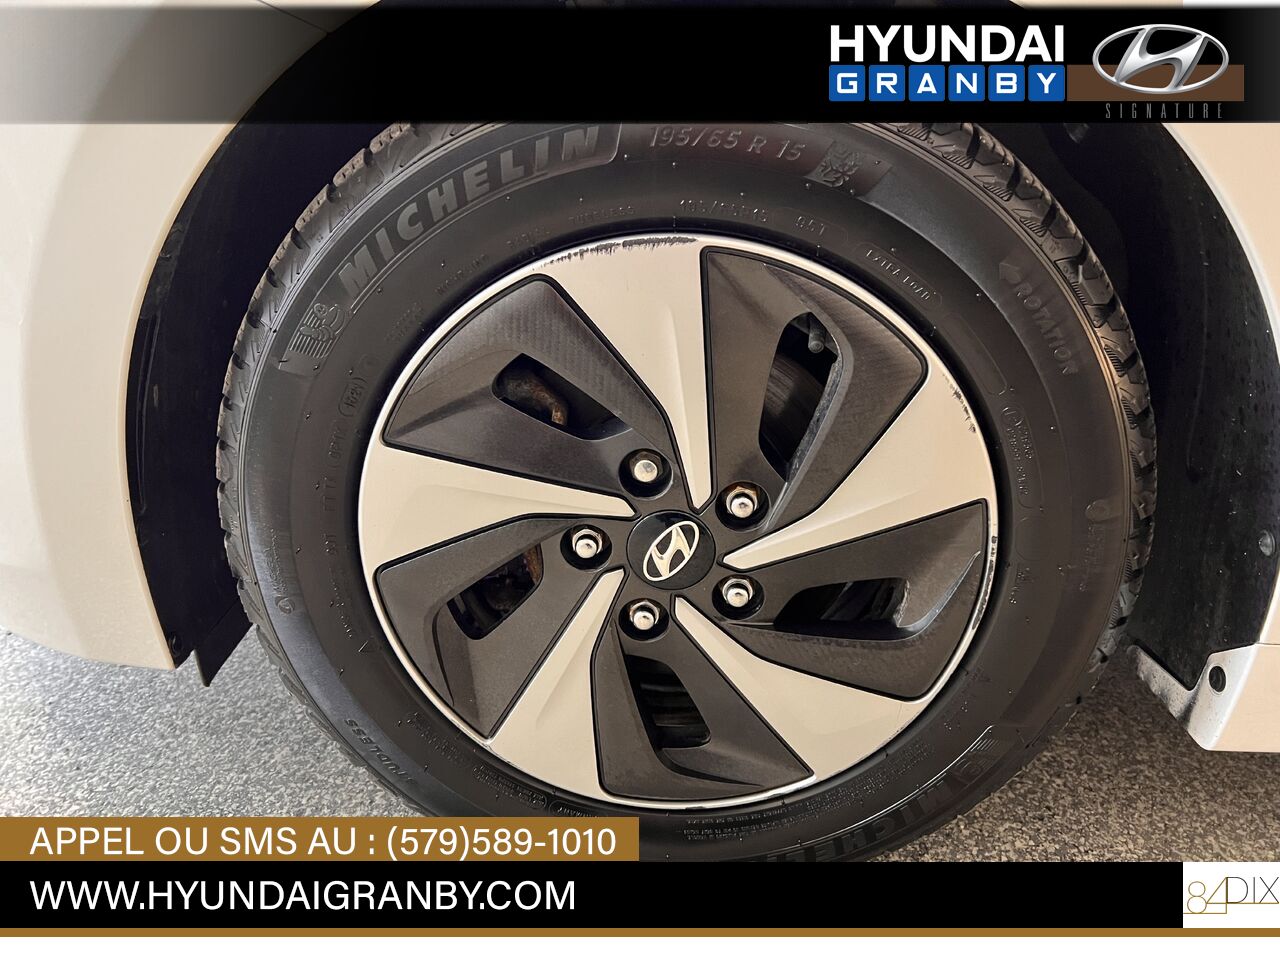 2017 Hyundai Ioniq hybride Granby - photo #35